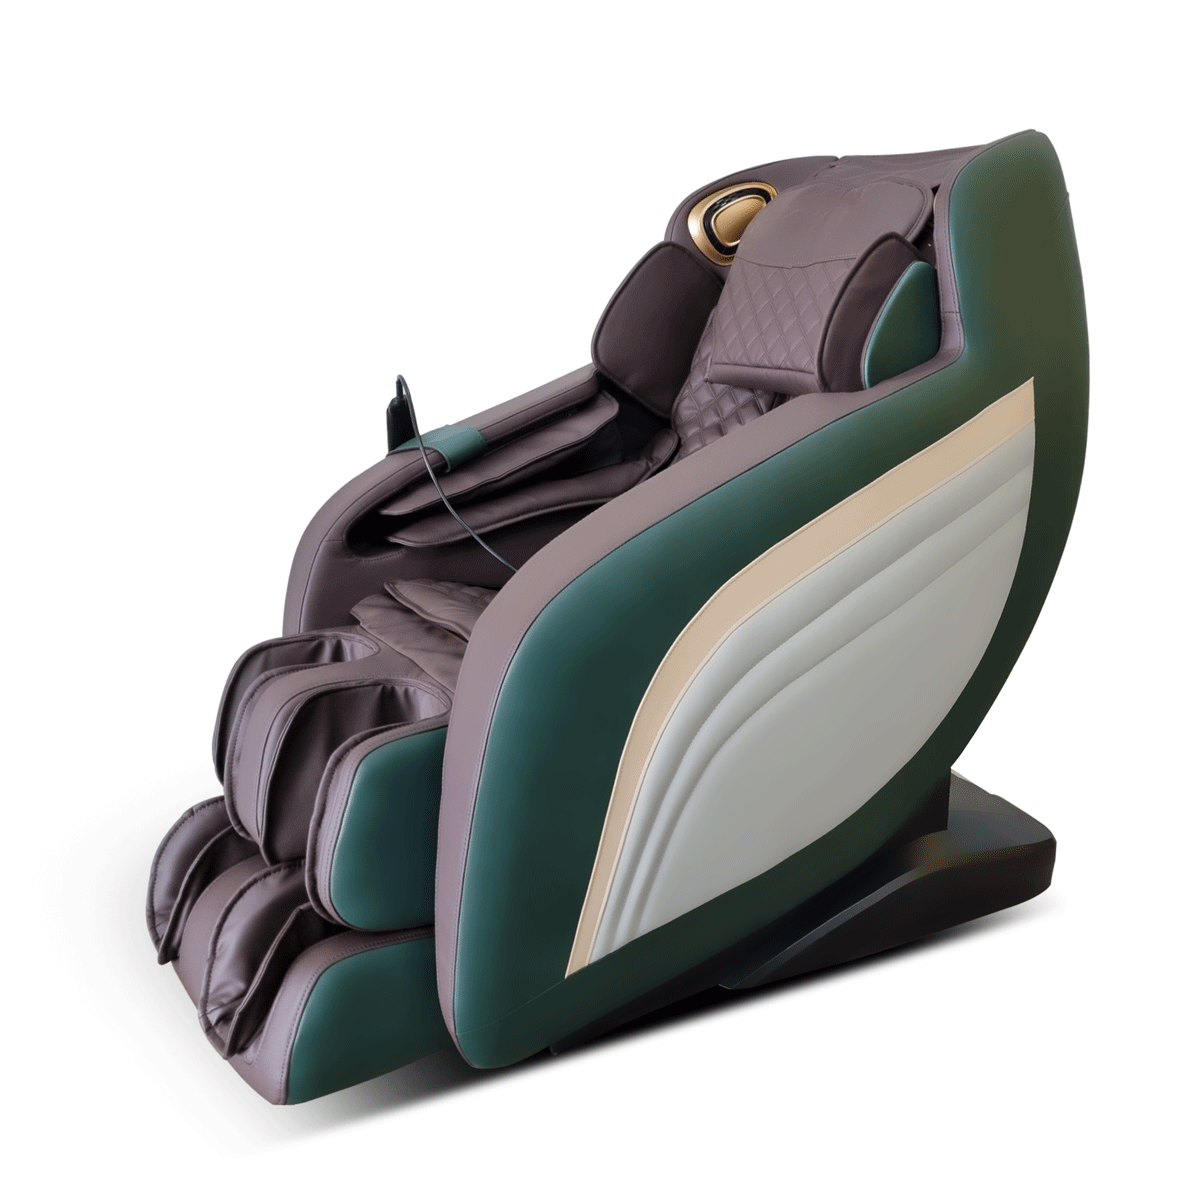 Ghế massage Atochi 899 nổi bật với vẻ ngoài khác biệt